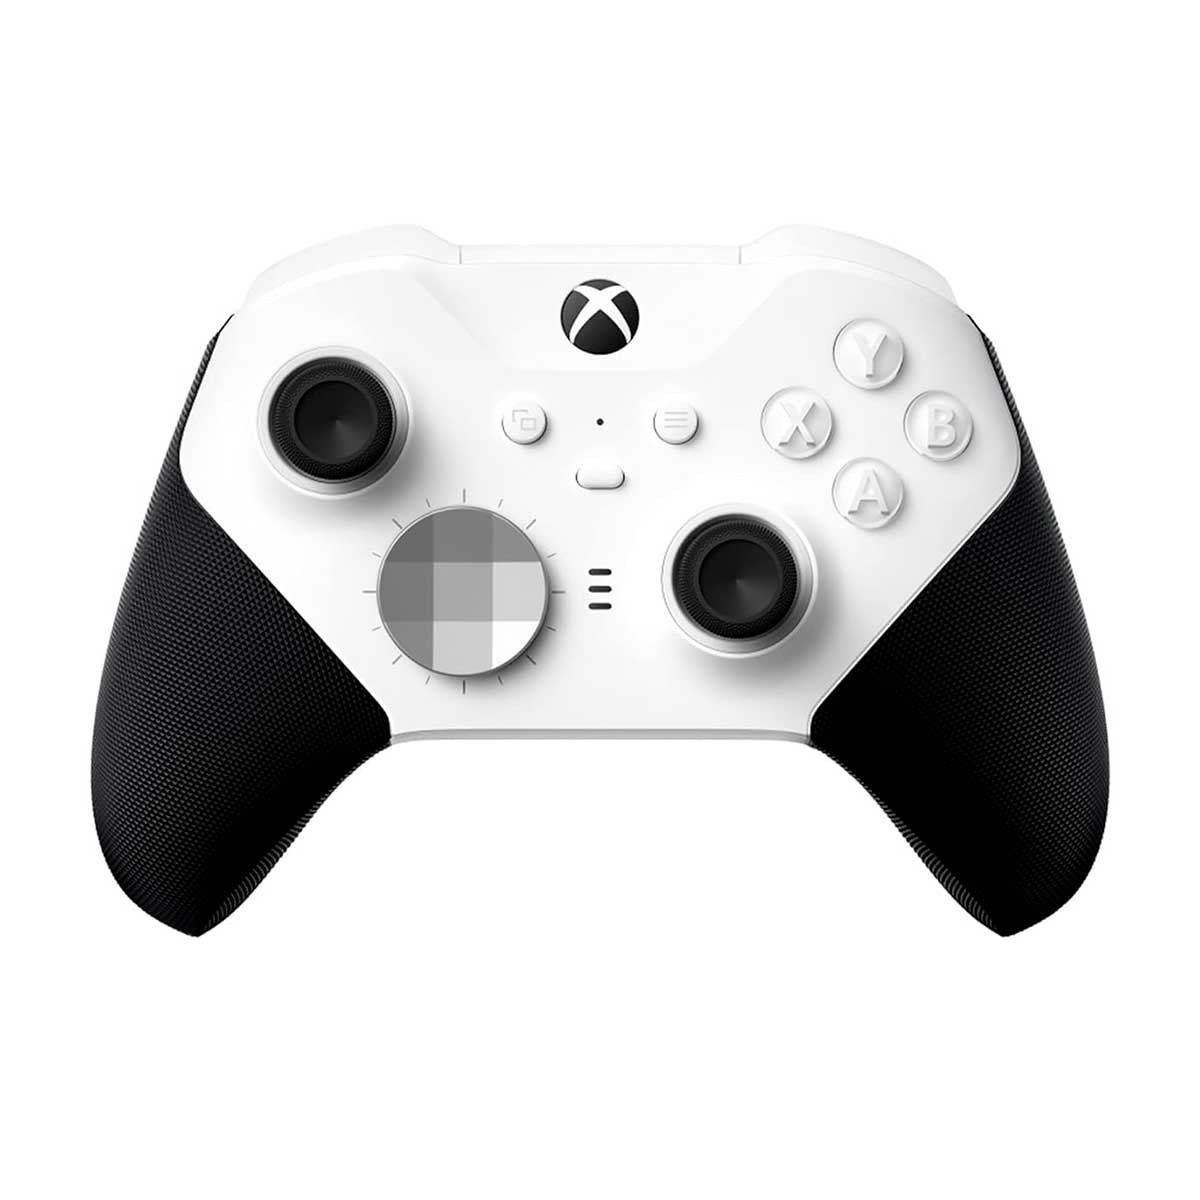 Accesorios y controles para Xbox